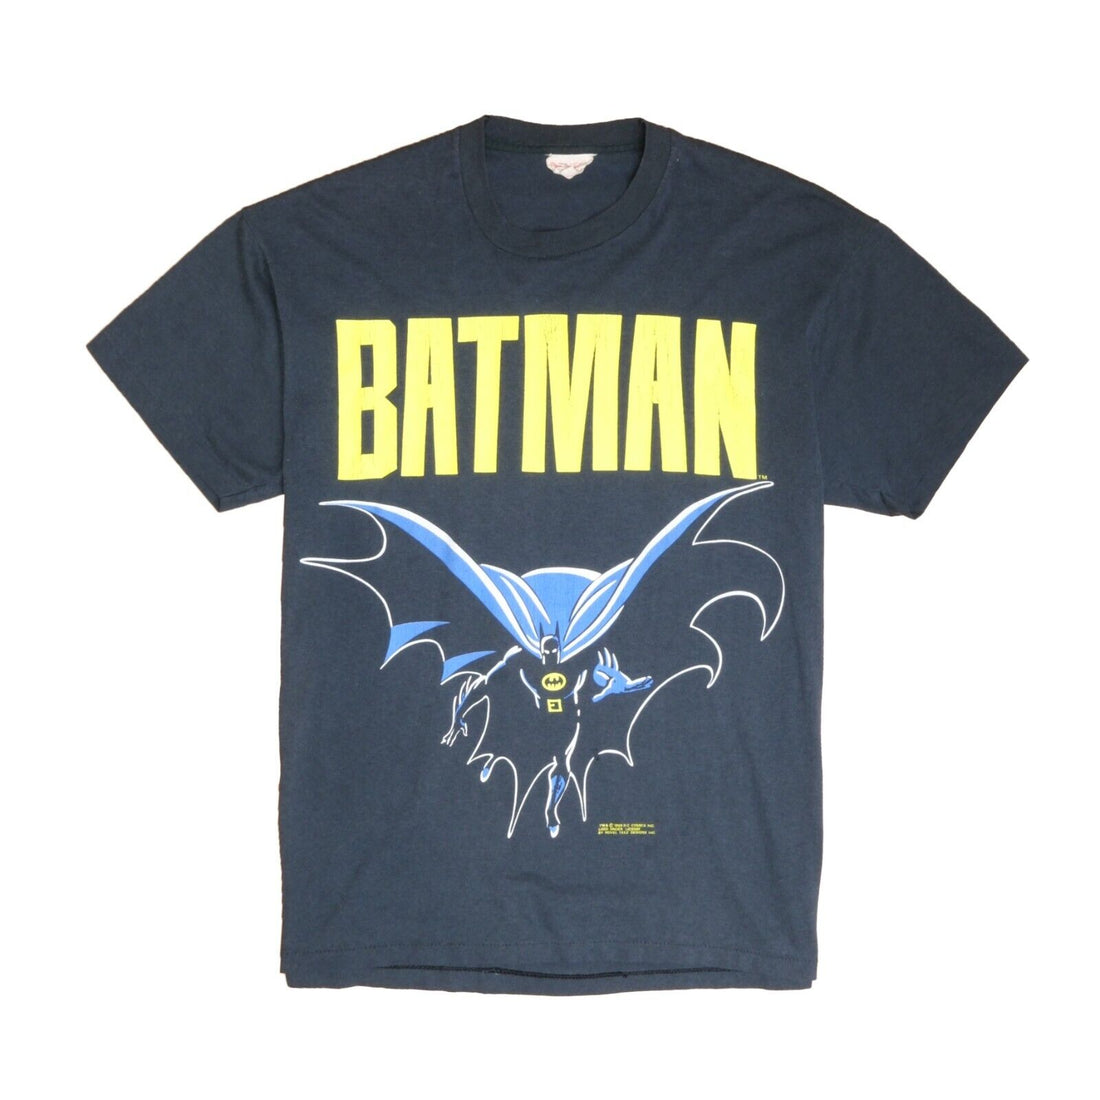 Vintage Batman DC Comics T-Shirt Size Large Black 1989 80s